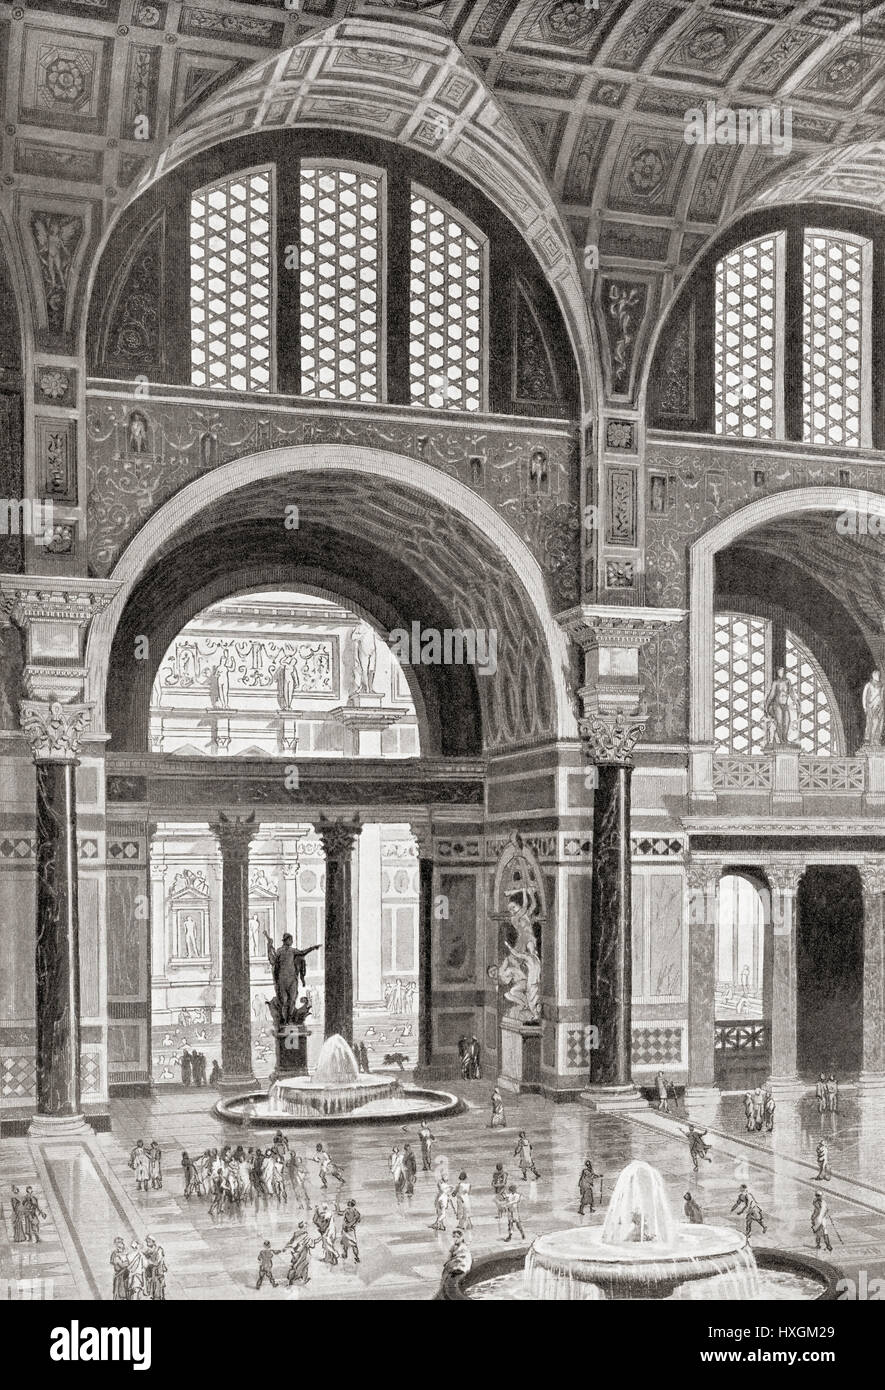 Des Künstlers Rekonstruktion von den Caracalla, Rom, Italien.  Hutchinson Geschichte der Nationen veröffentlichte 1915. Stockfoto